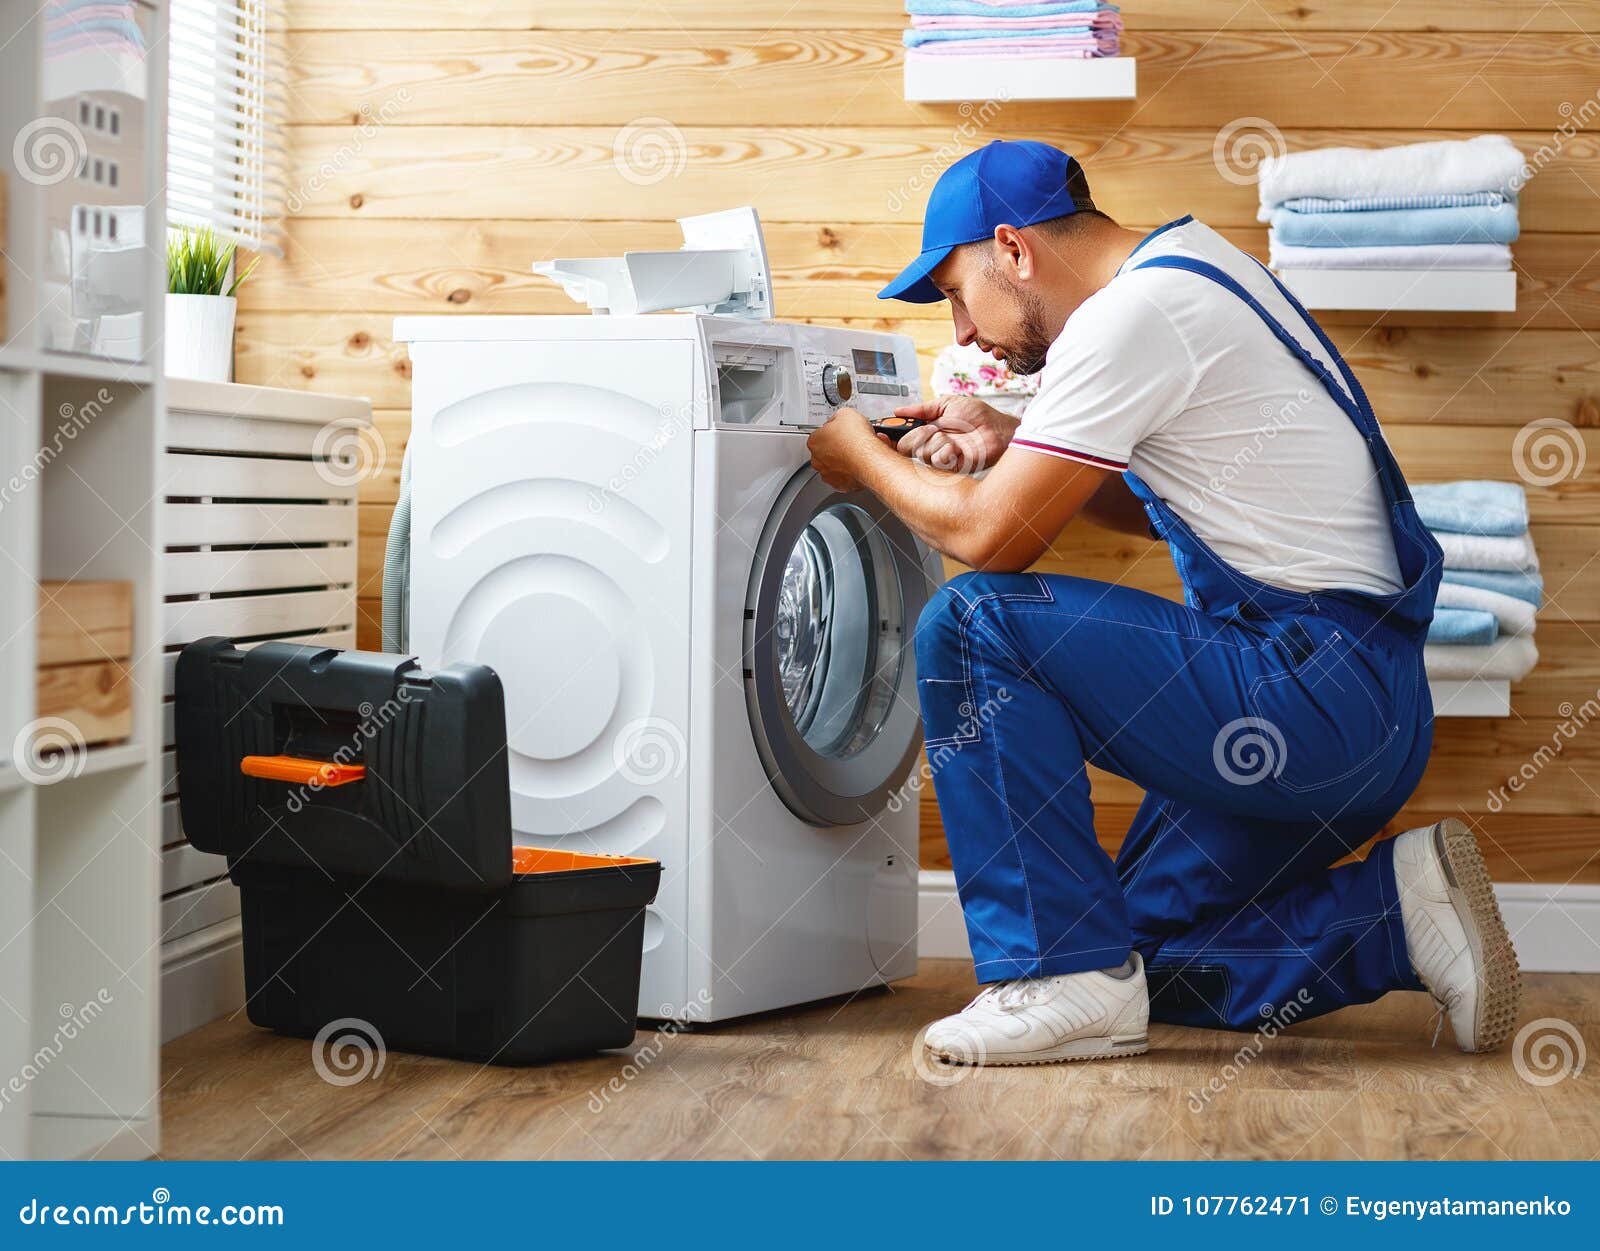 working man plumber repairs washing machine in laundry